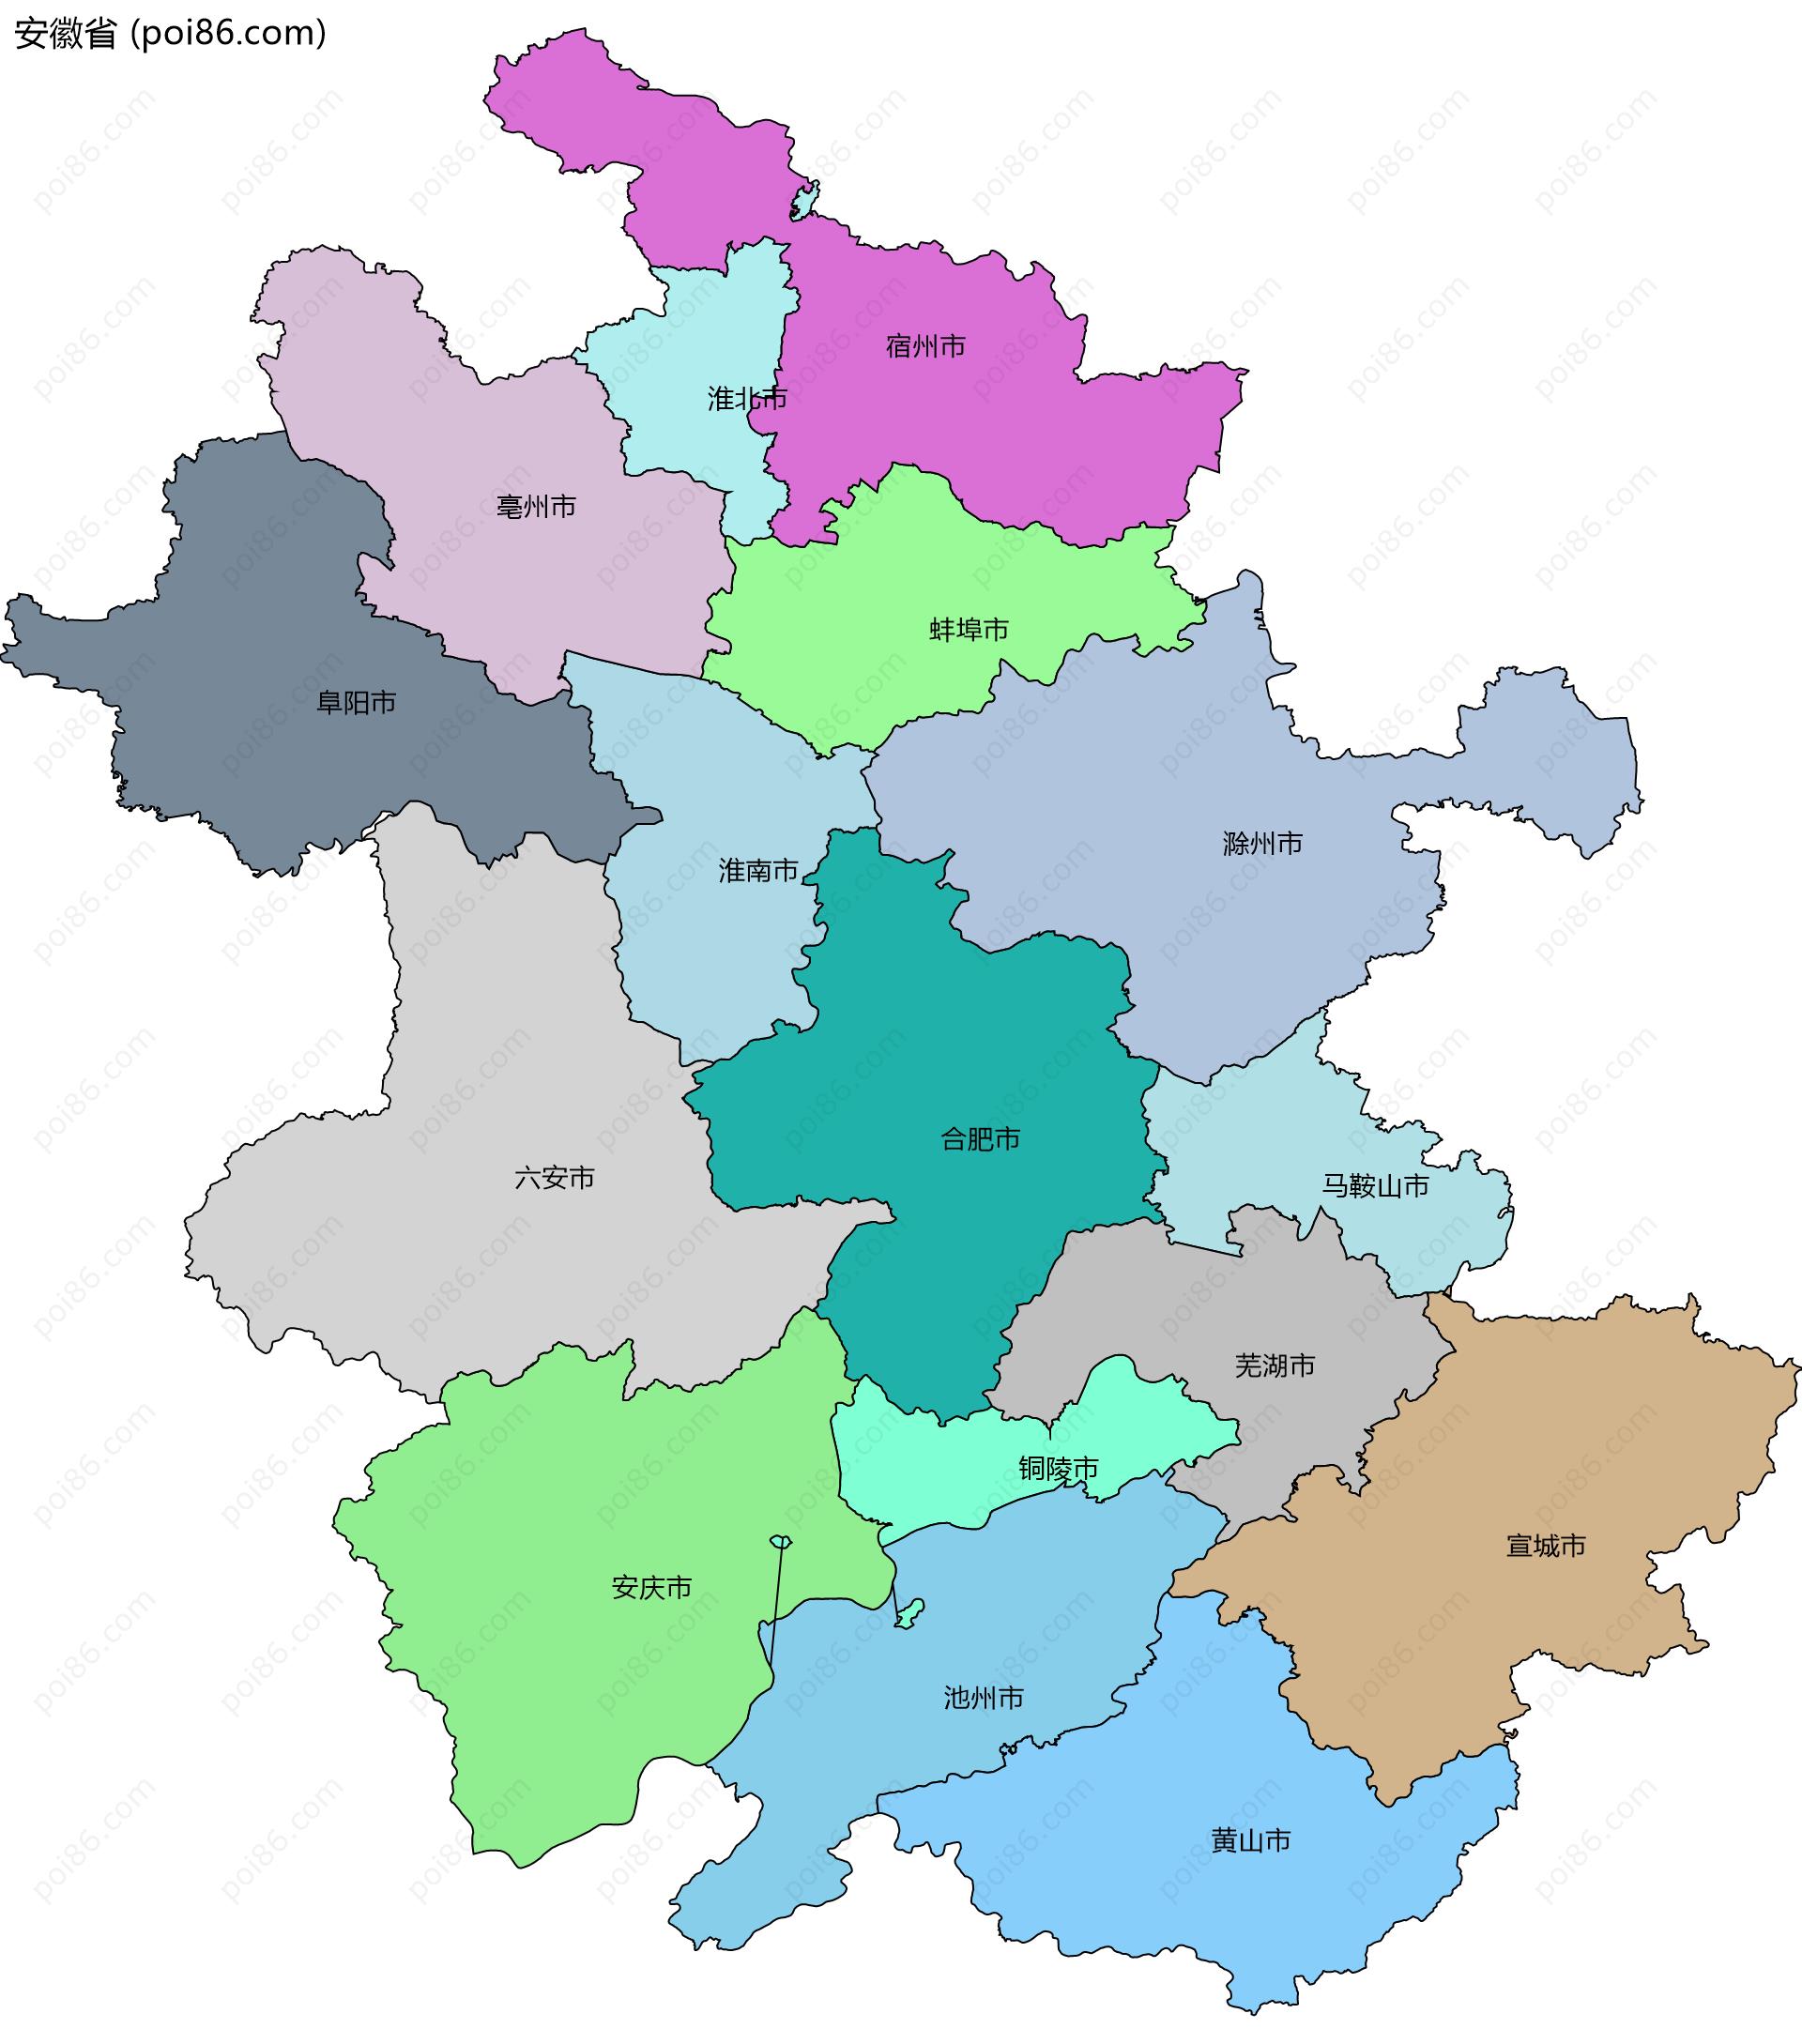 安徽省边界地图